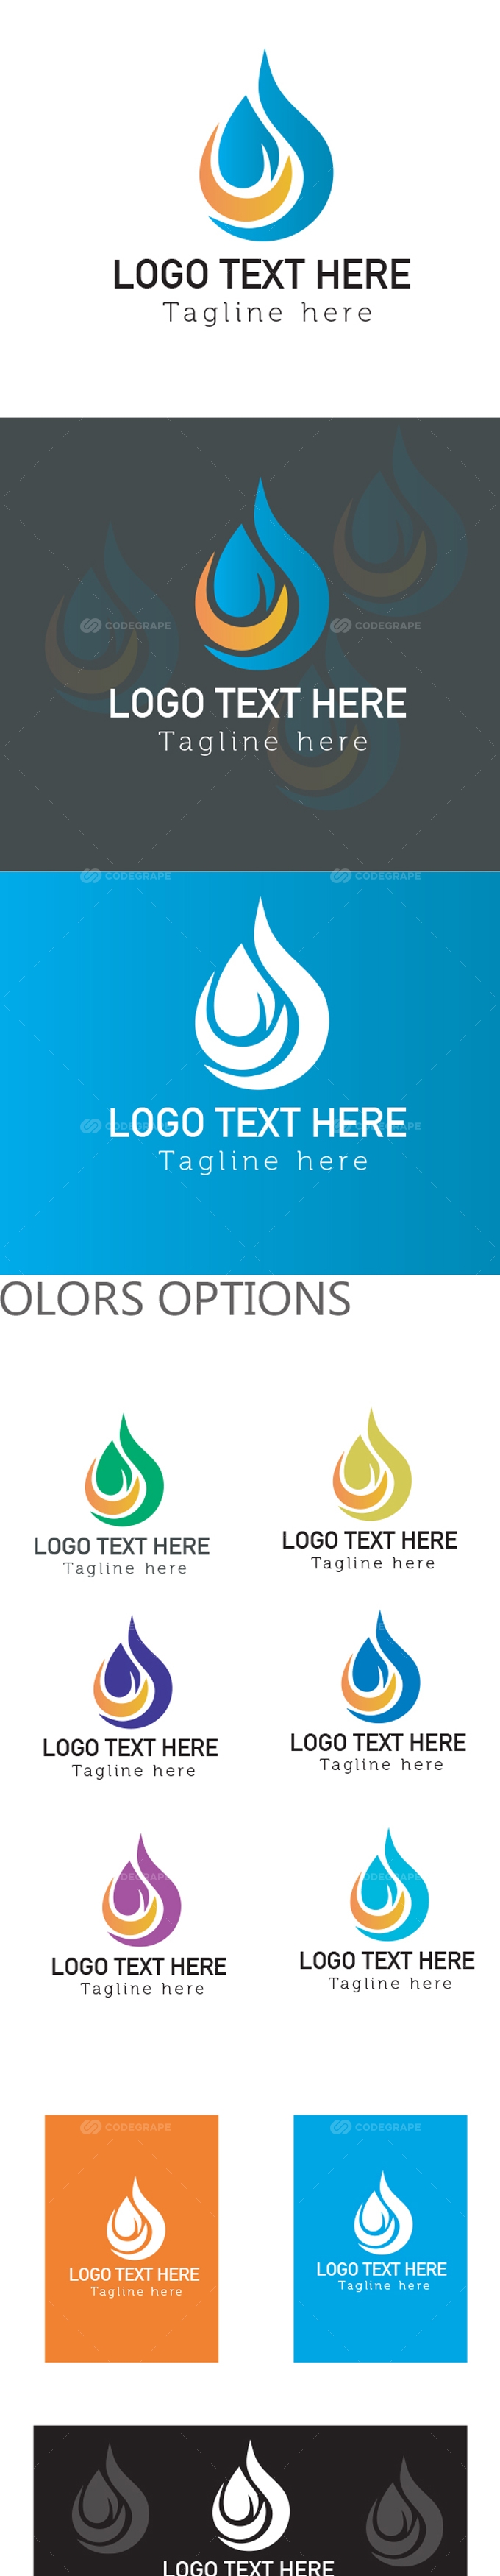 Abstract Logo Designs